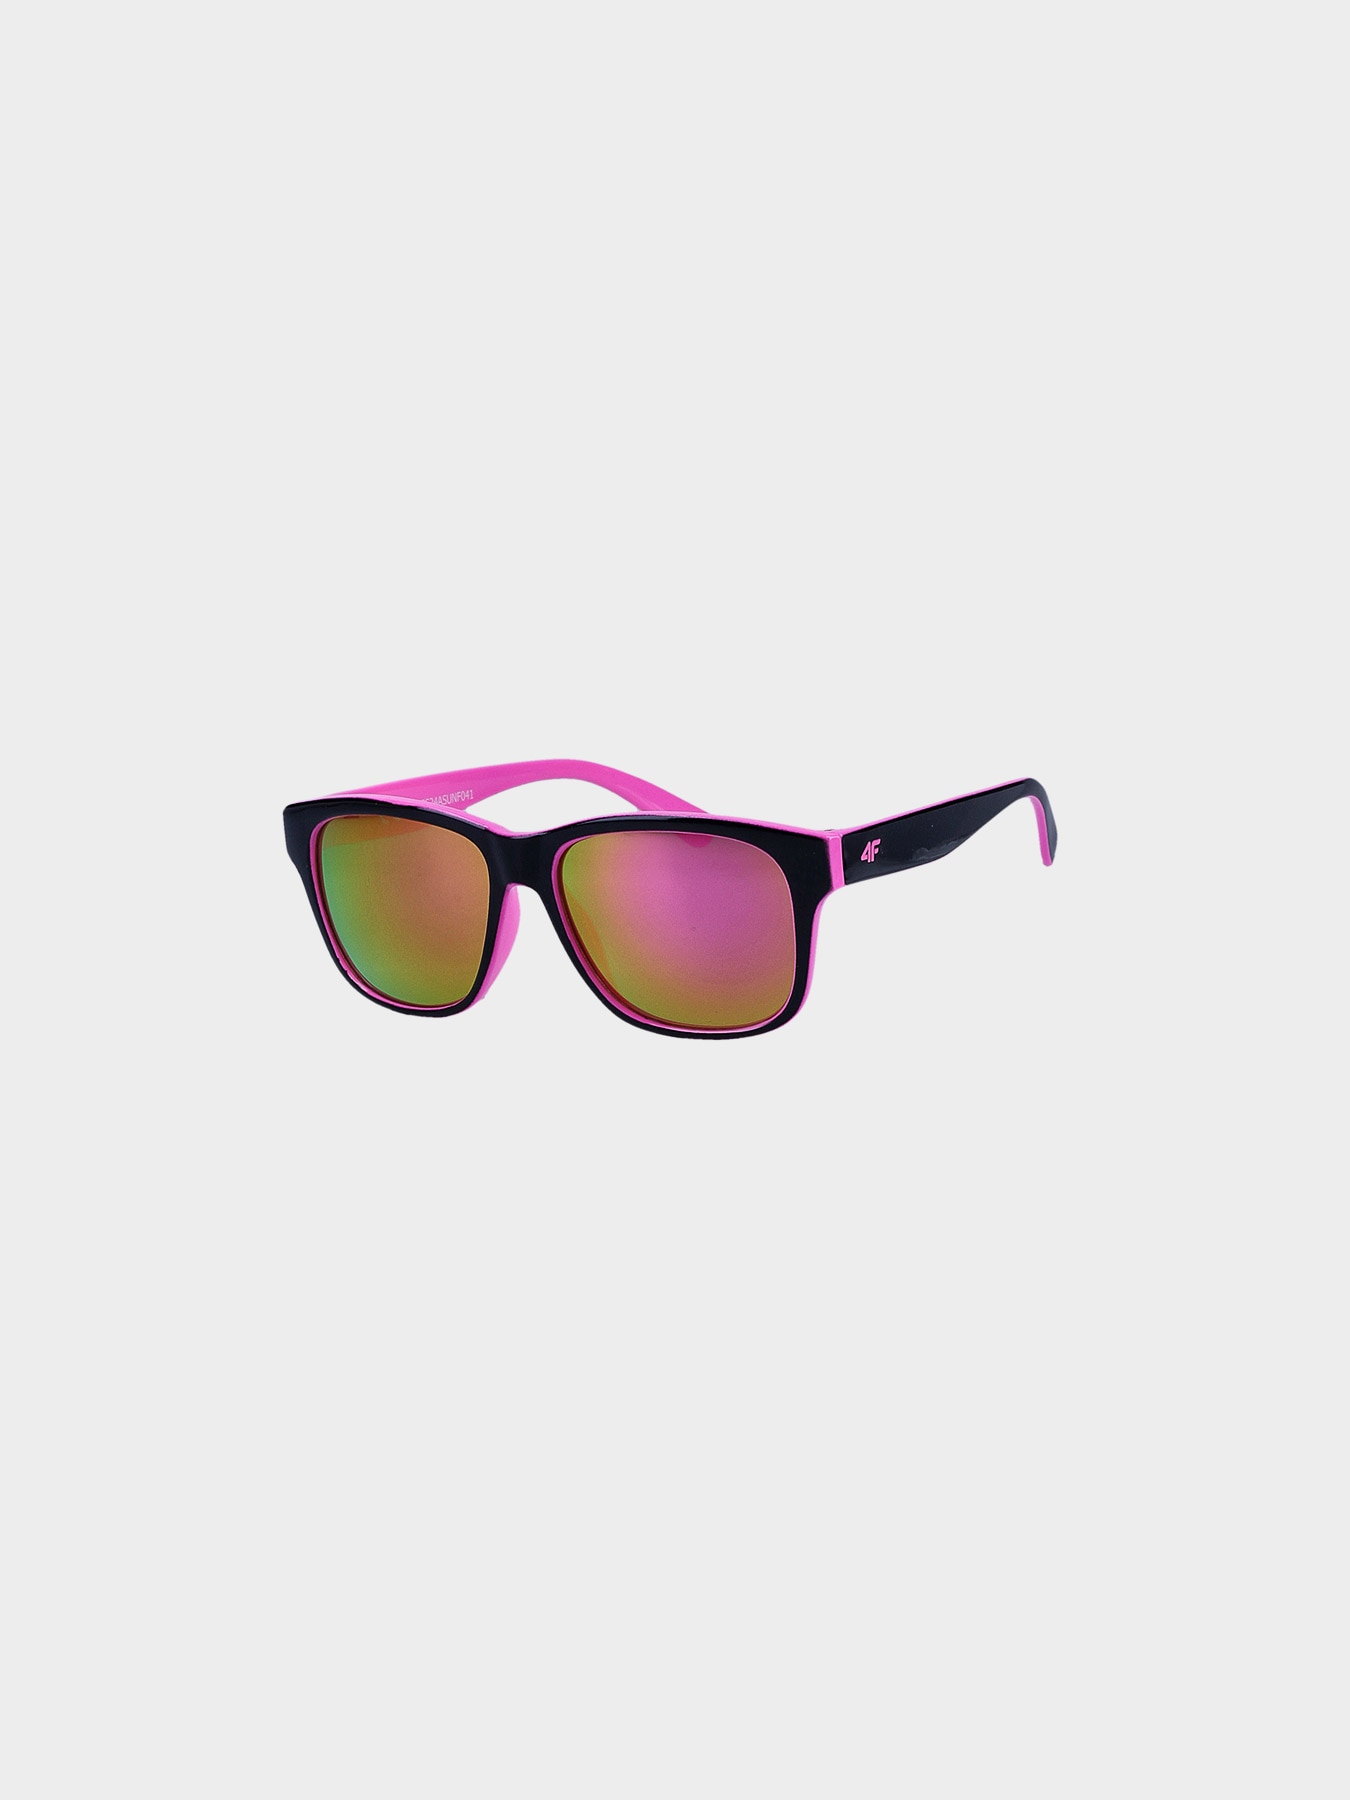 Dievčenské slnečné okuliare s viacfarebným povlakom - viacfarebné